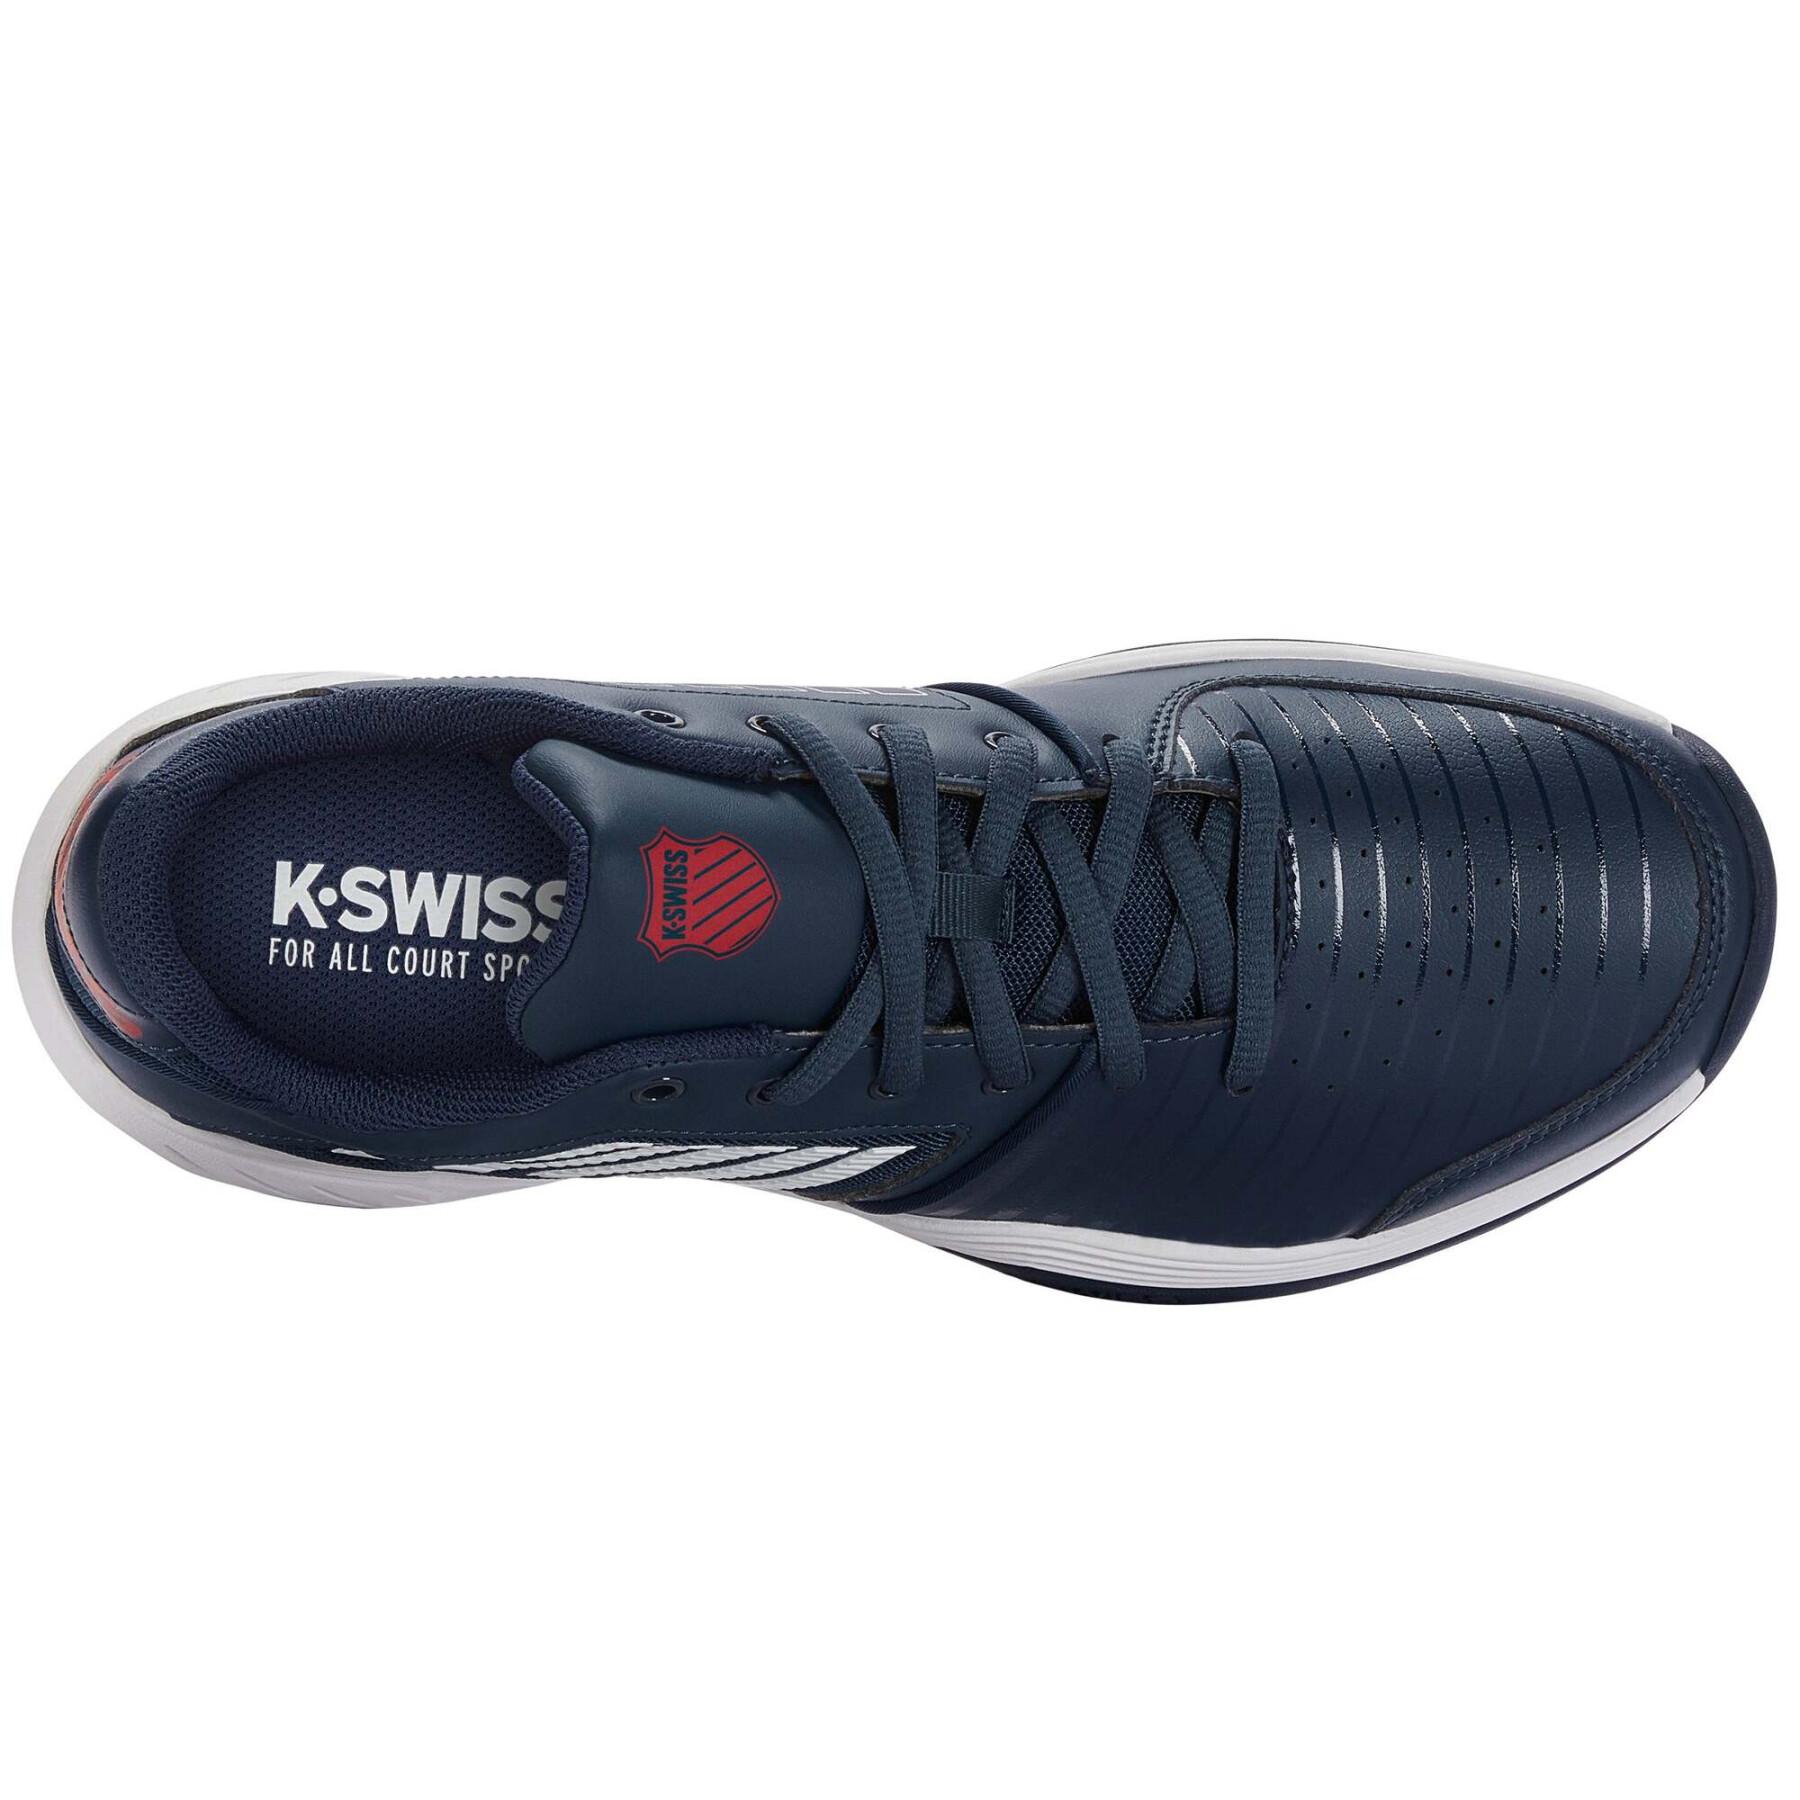 Tennis shoes K-Swiss Court Express Hb